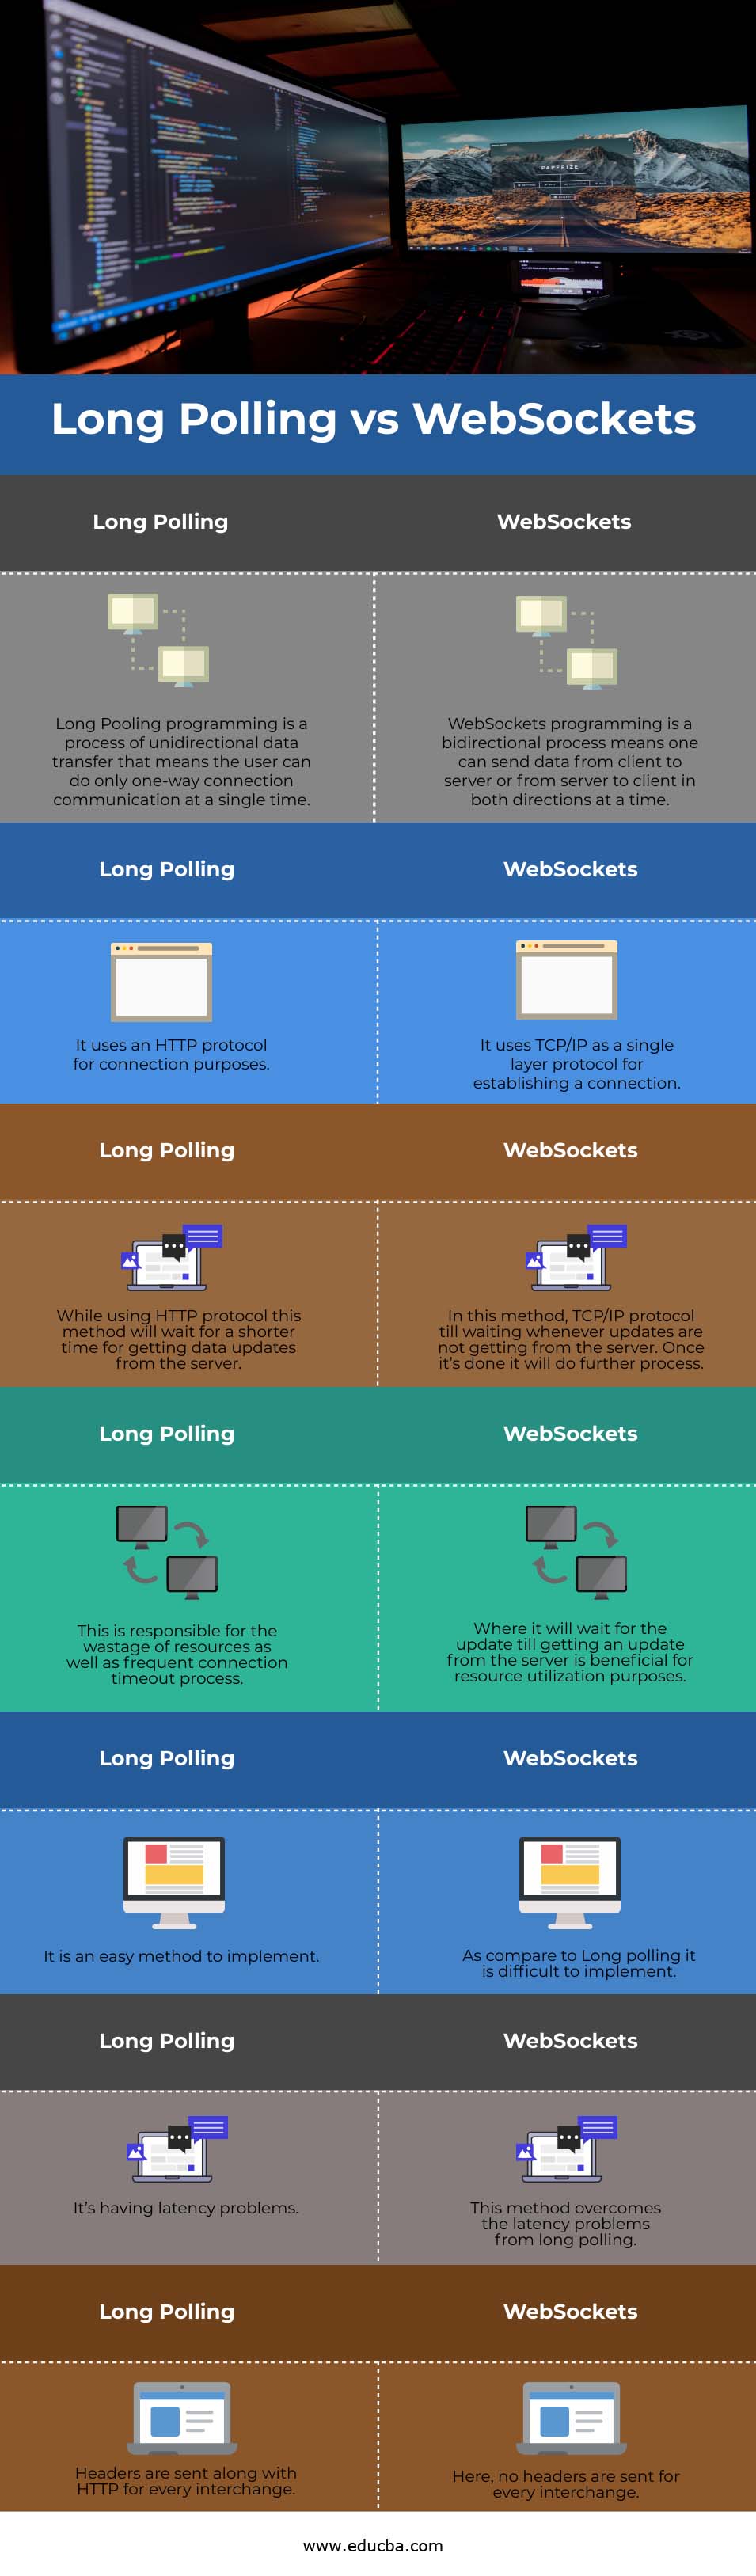 Long Polling vs WebSockets info